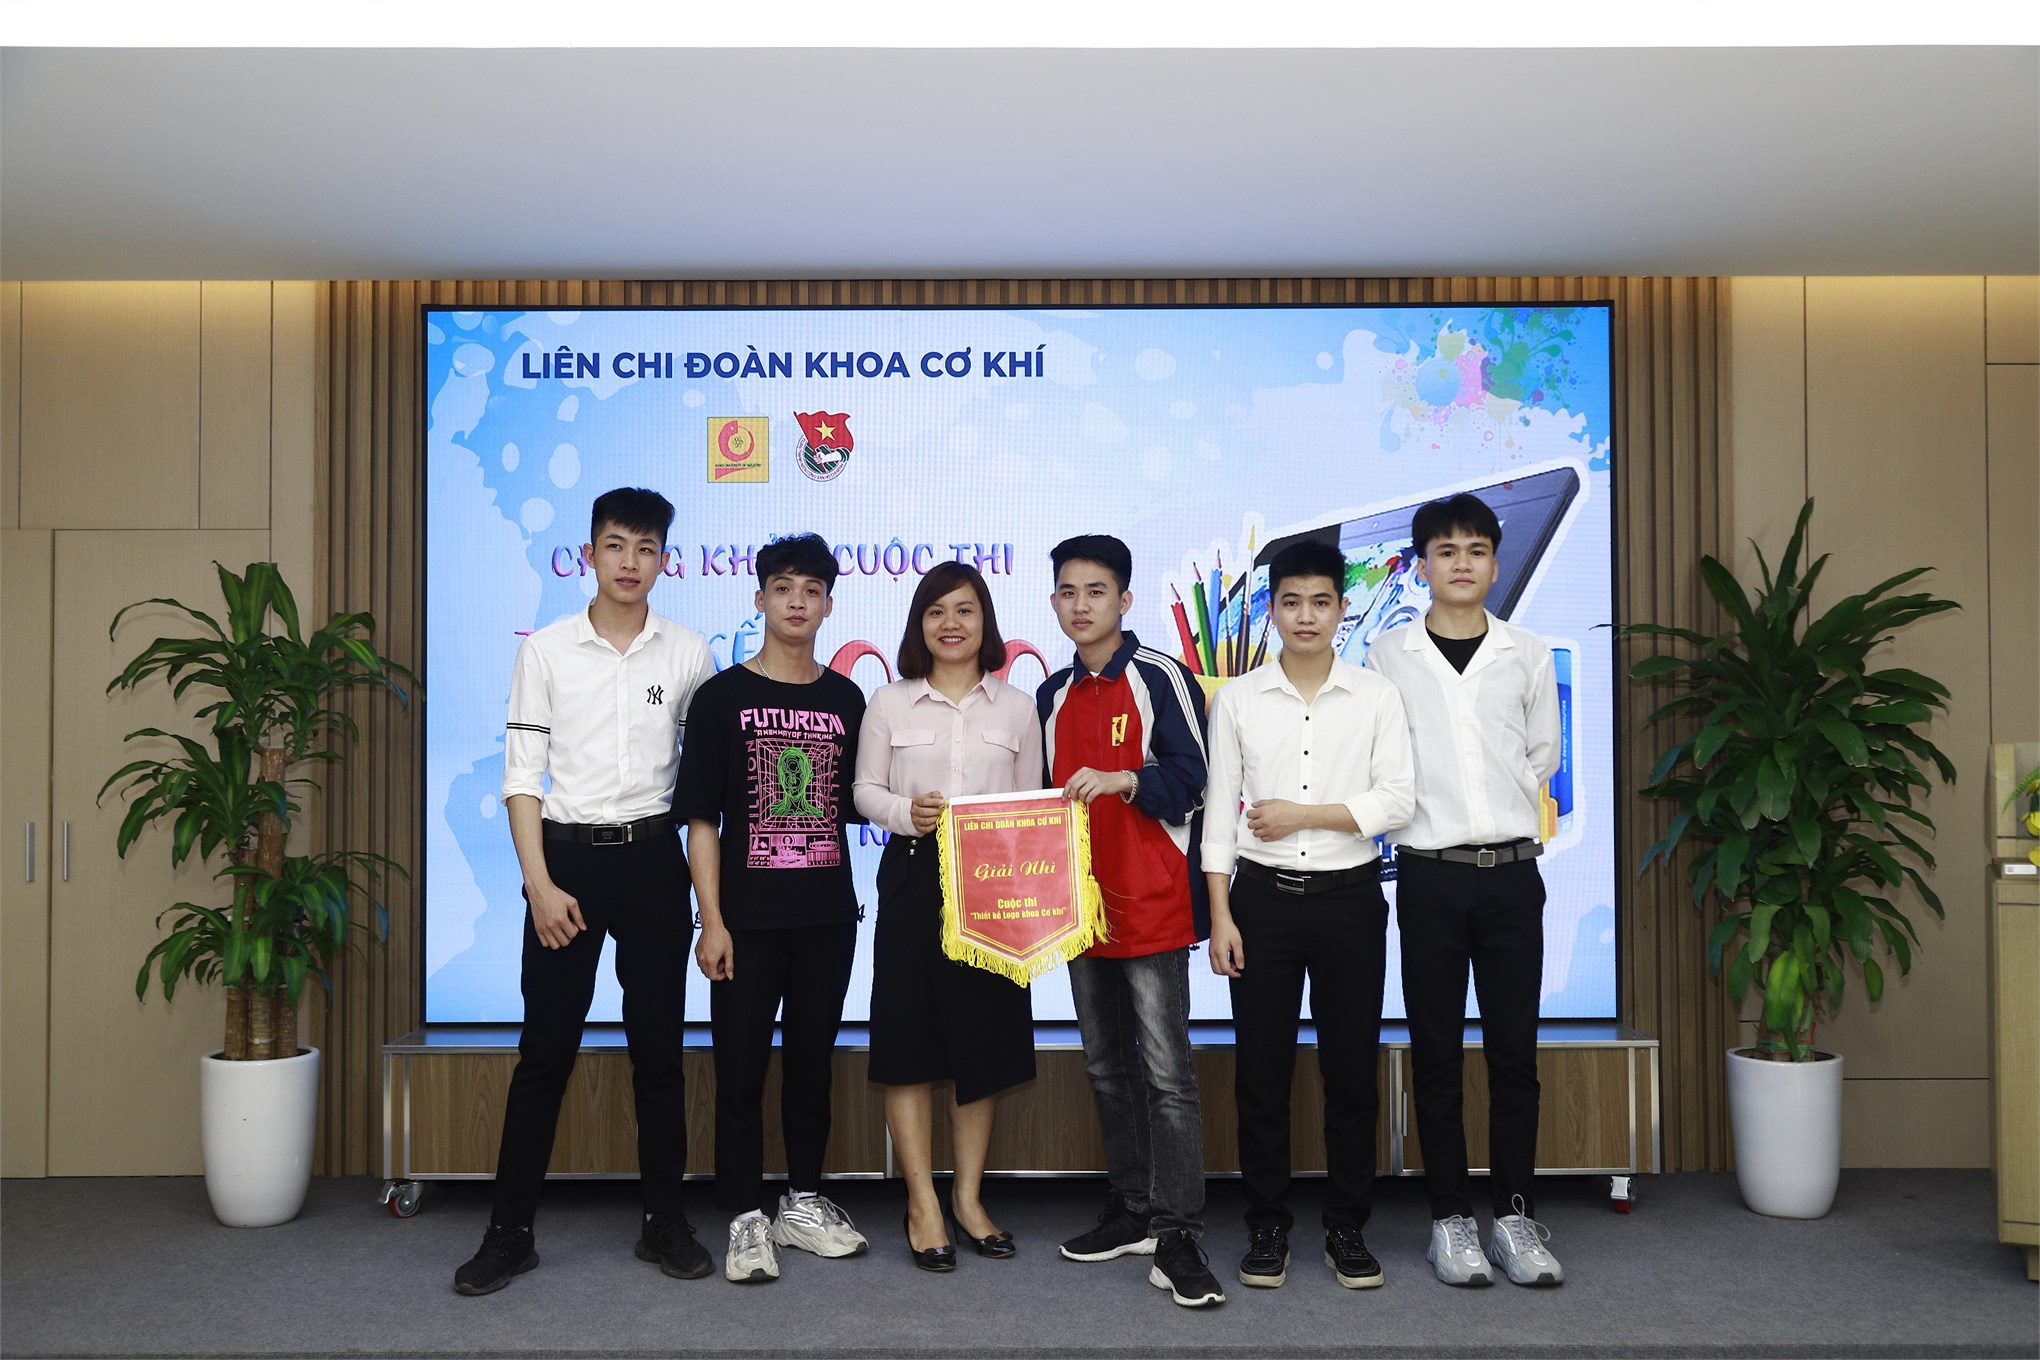 Sinh viên Trần Đăng Hùng Long xuất sắc giành giải nhất cuộc thi `Thiết kế logo khoa Cơ khí`